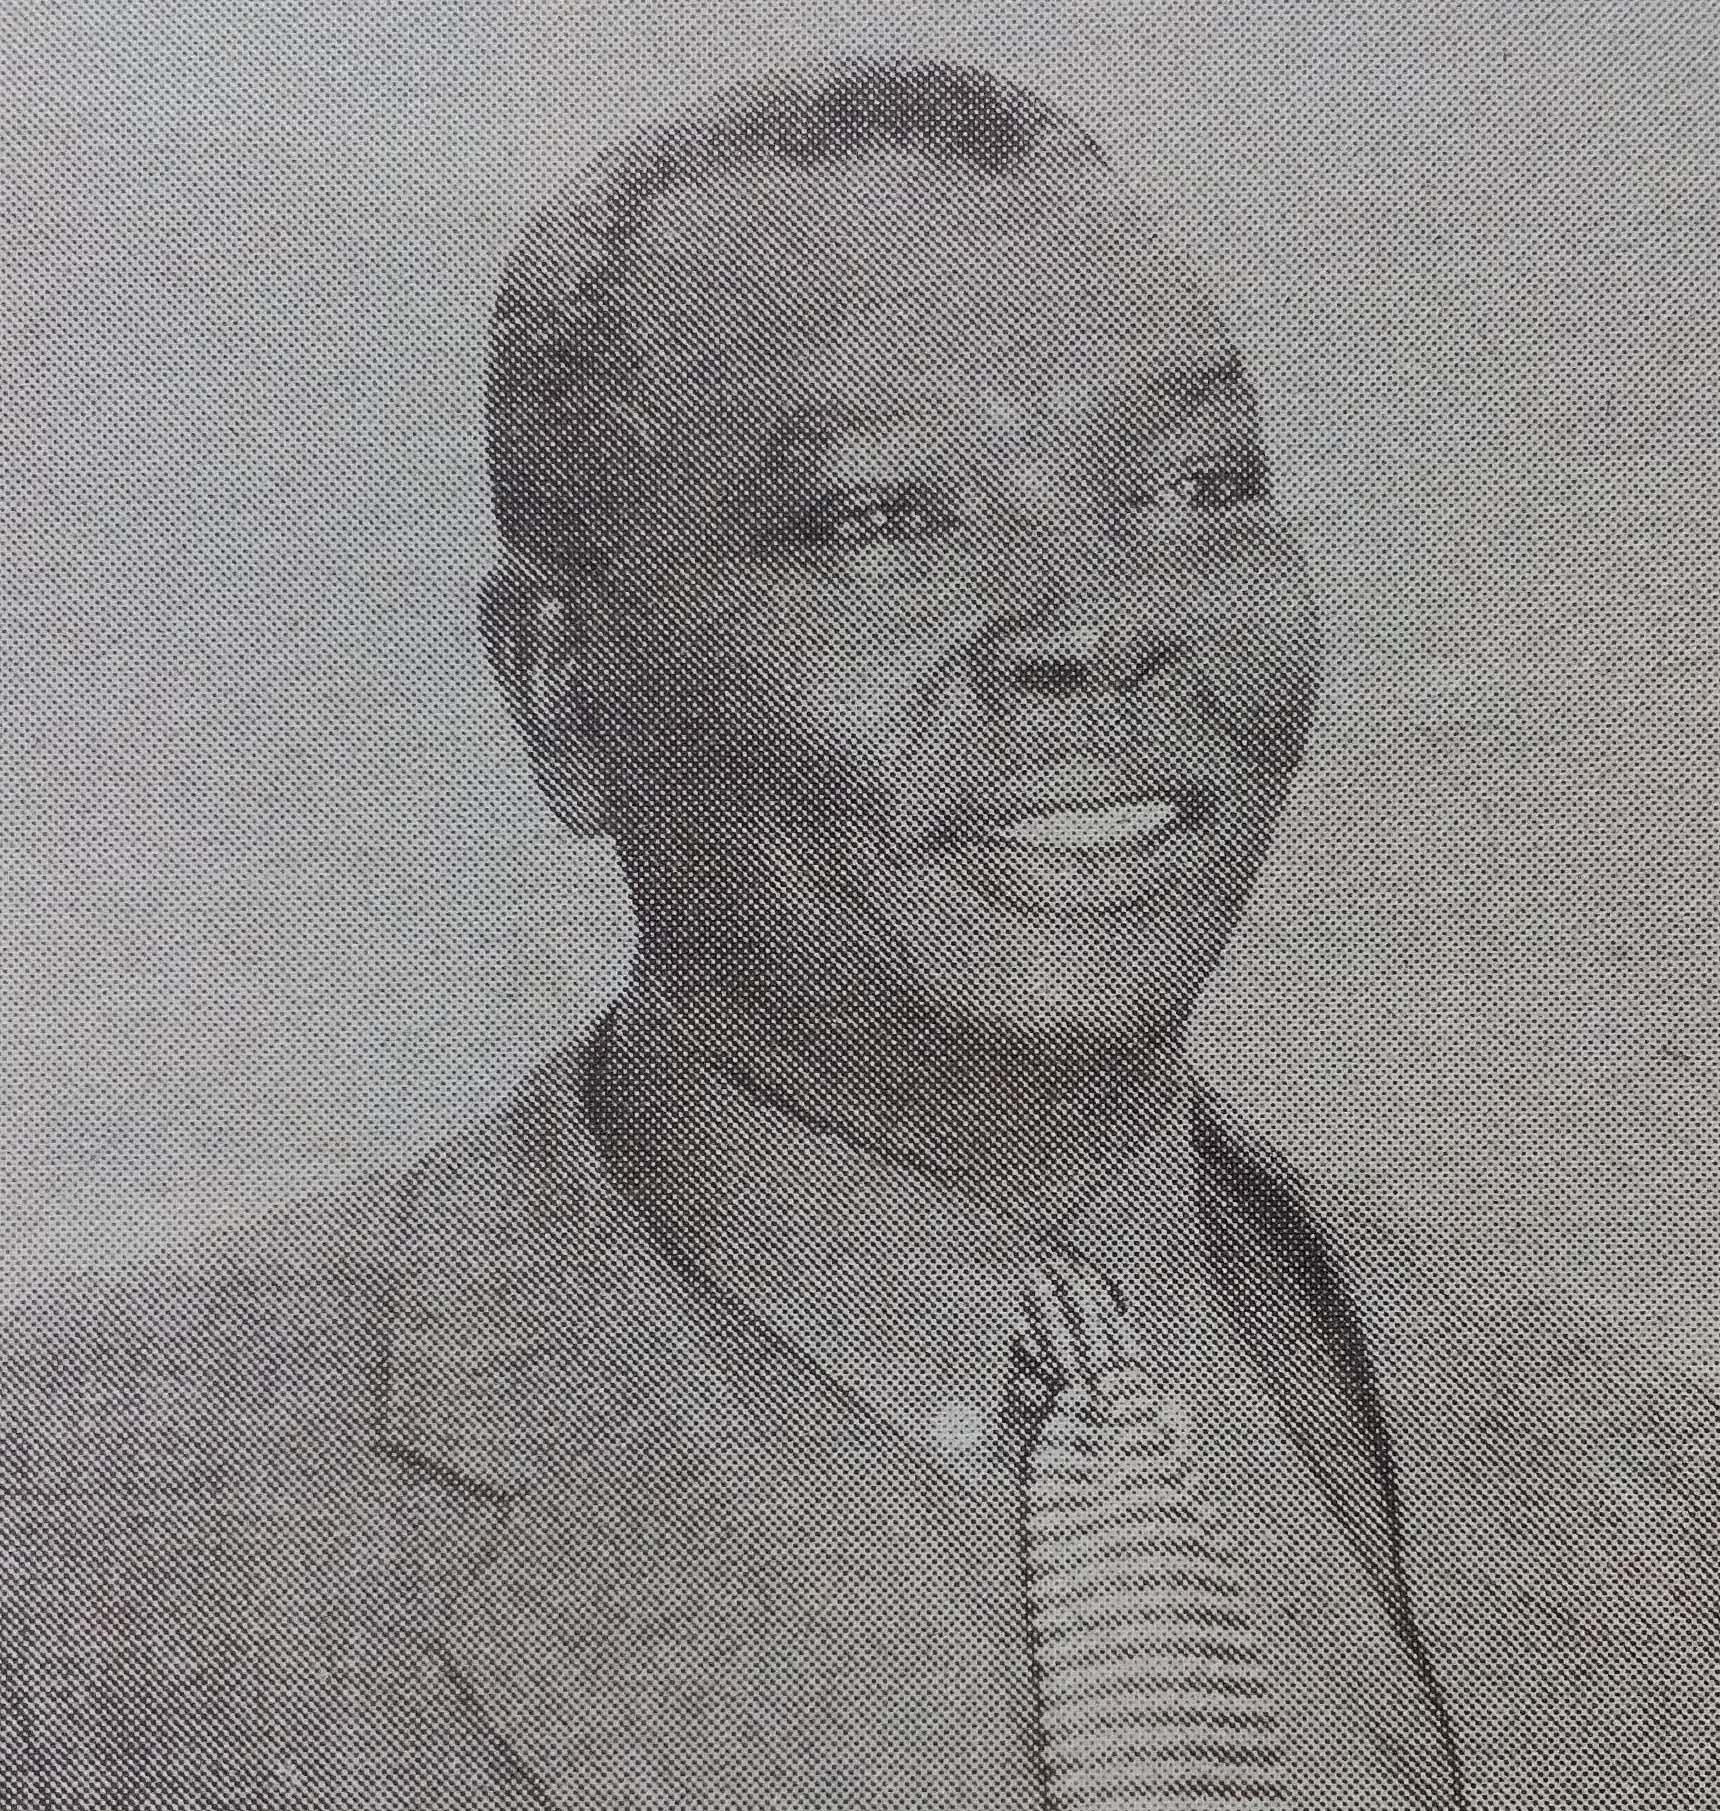 Obituary Image of Stephen Uno Charles Ikenye